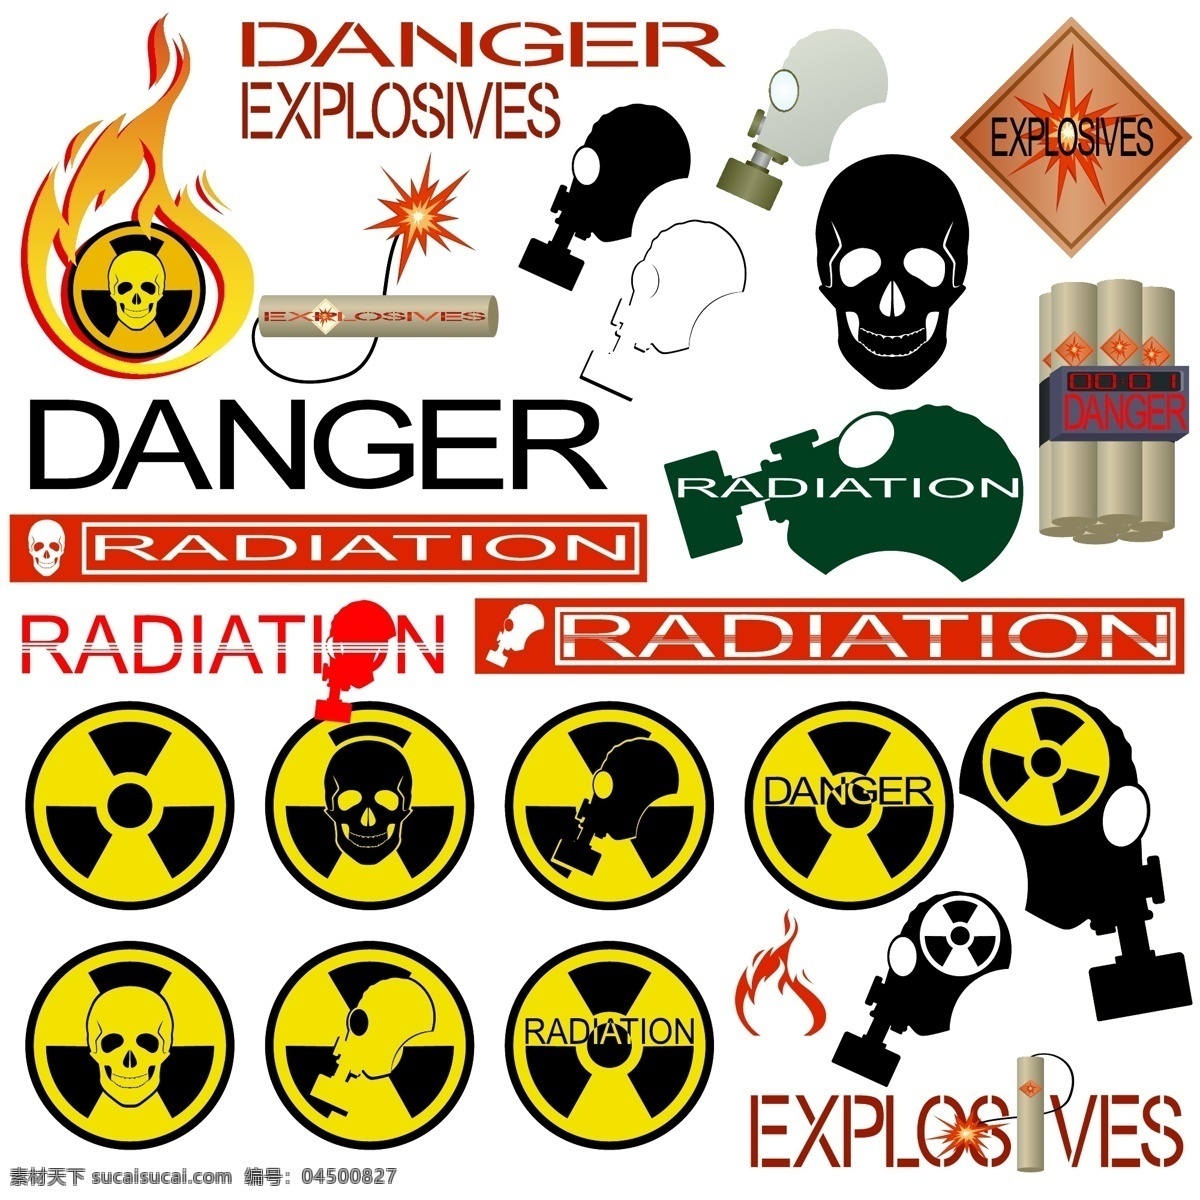 危险品 标签 贴纸 模板下载 火焰 骷髅头 有毒 毒气 警示 图标 危险图标 图标设计 矢量图标 公共标志 标志图标 矢量素材 白色